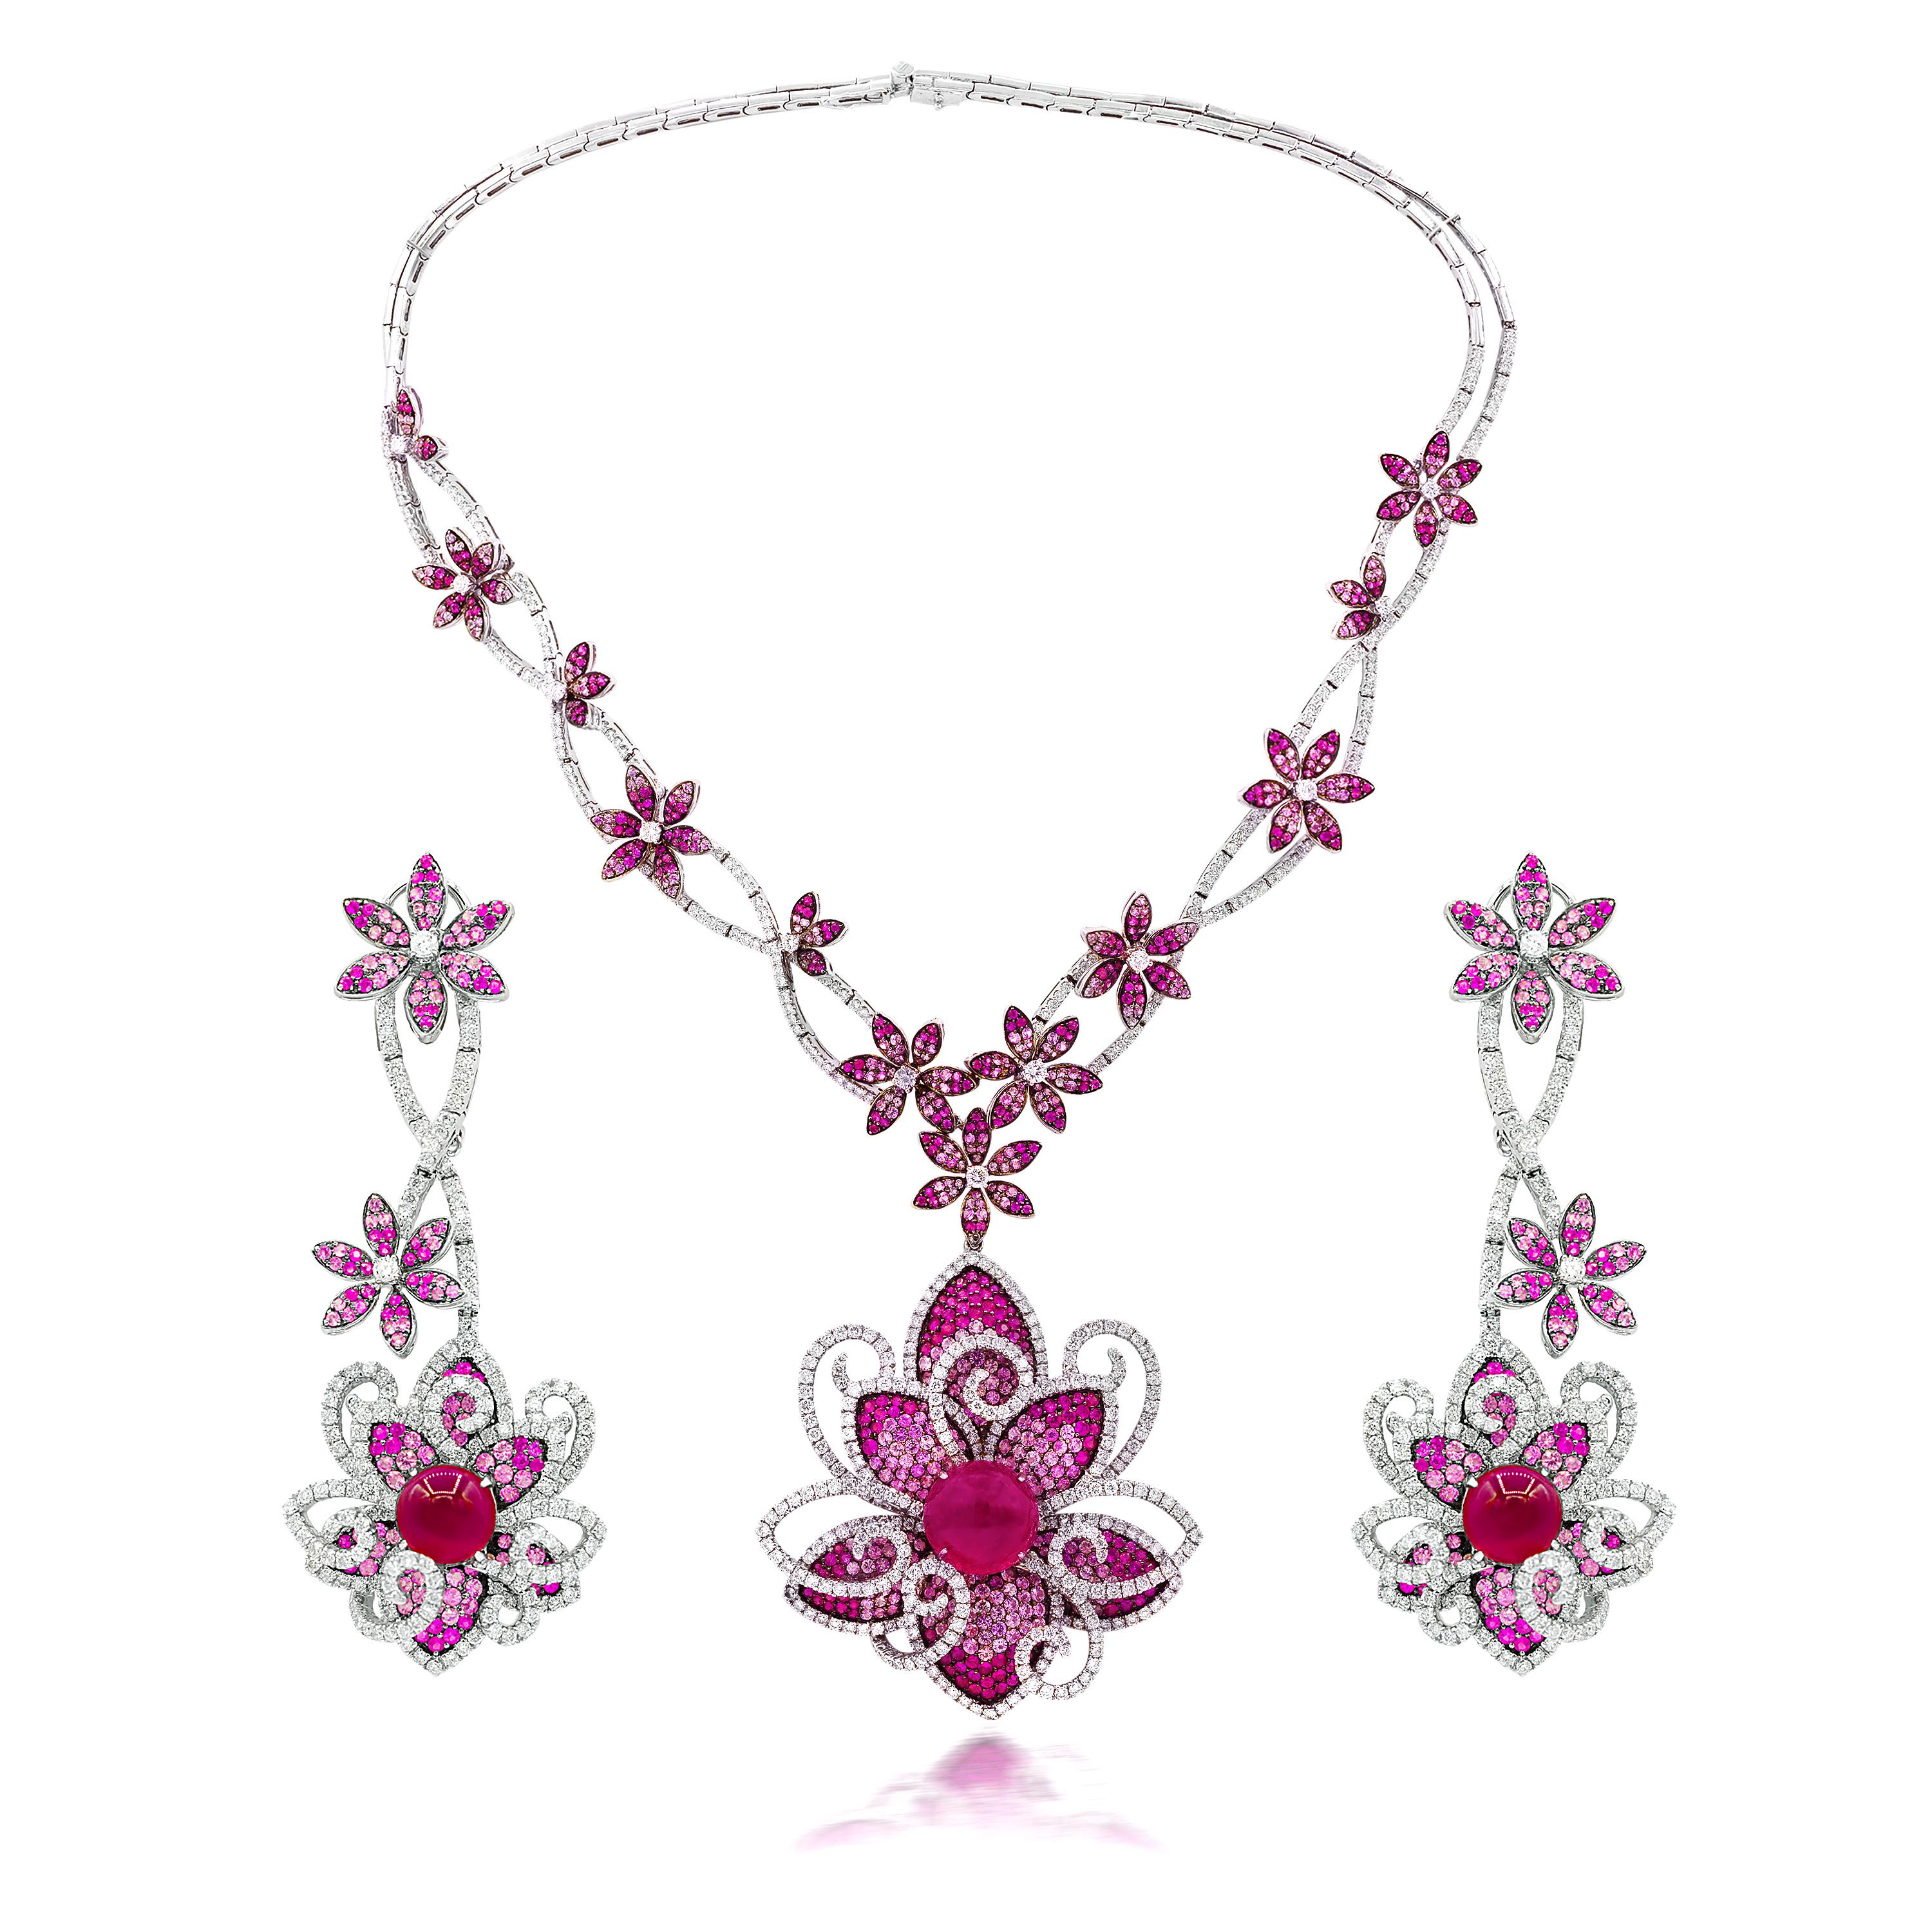 Einzigartige Rubellit-, Saphir- und Diamant-Halskette mit 33,10 Karat Rubellit und rosa Saphiren, gemischt mit 11,50 Karat runden Diamanten im Brillantschliff. 
*Ohrringe sind separat erhältlich. 
